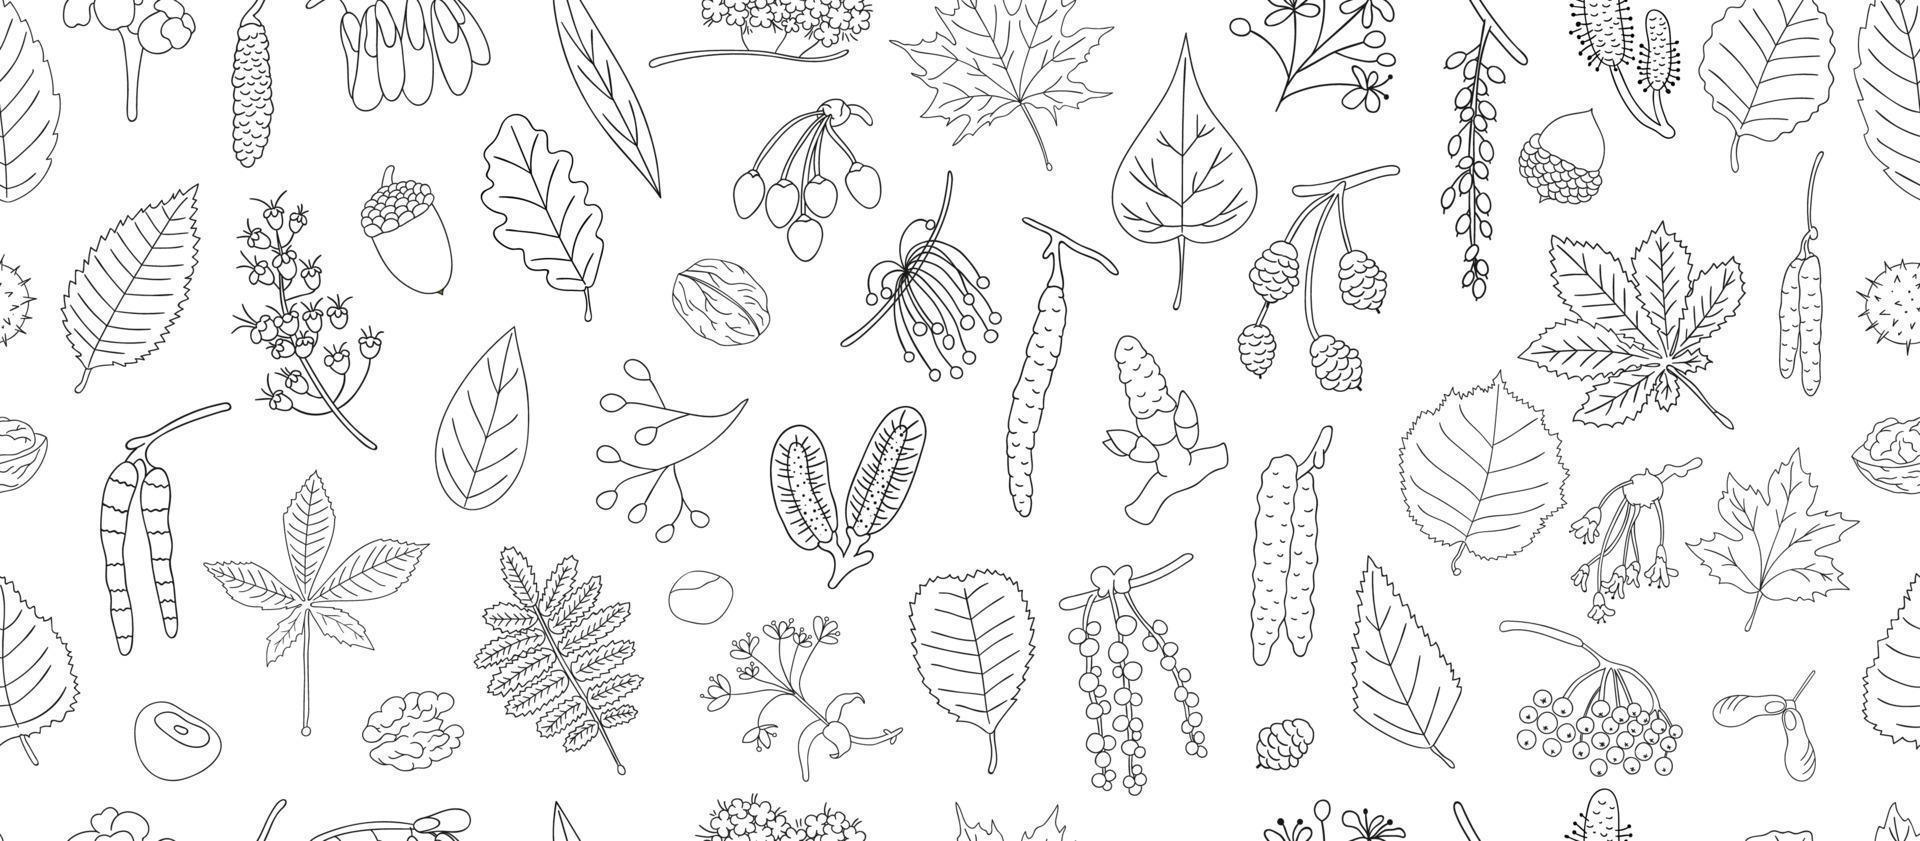 vektor seamless mönster av svarta och vita träd element isolerad på vit bakgrund. linjär konstbakgrund av björk, lönn, ek, rönn, kastanj, hassel, lind, al, asp, alm, poppelblad